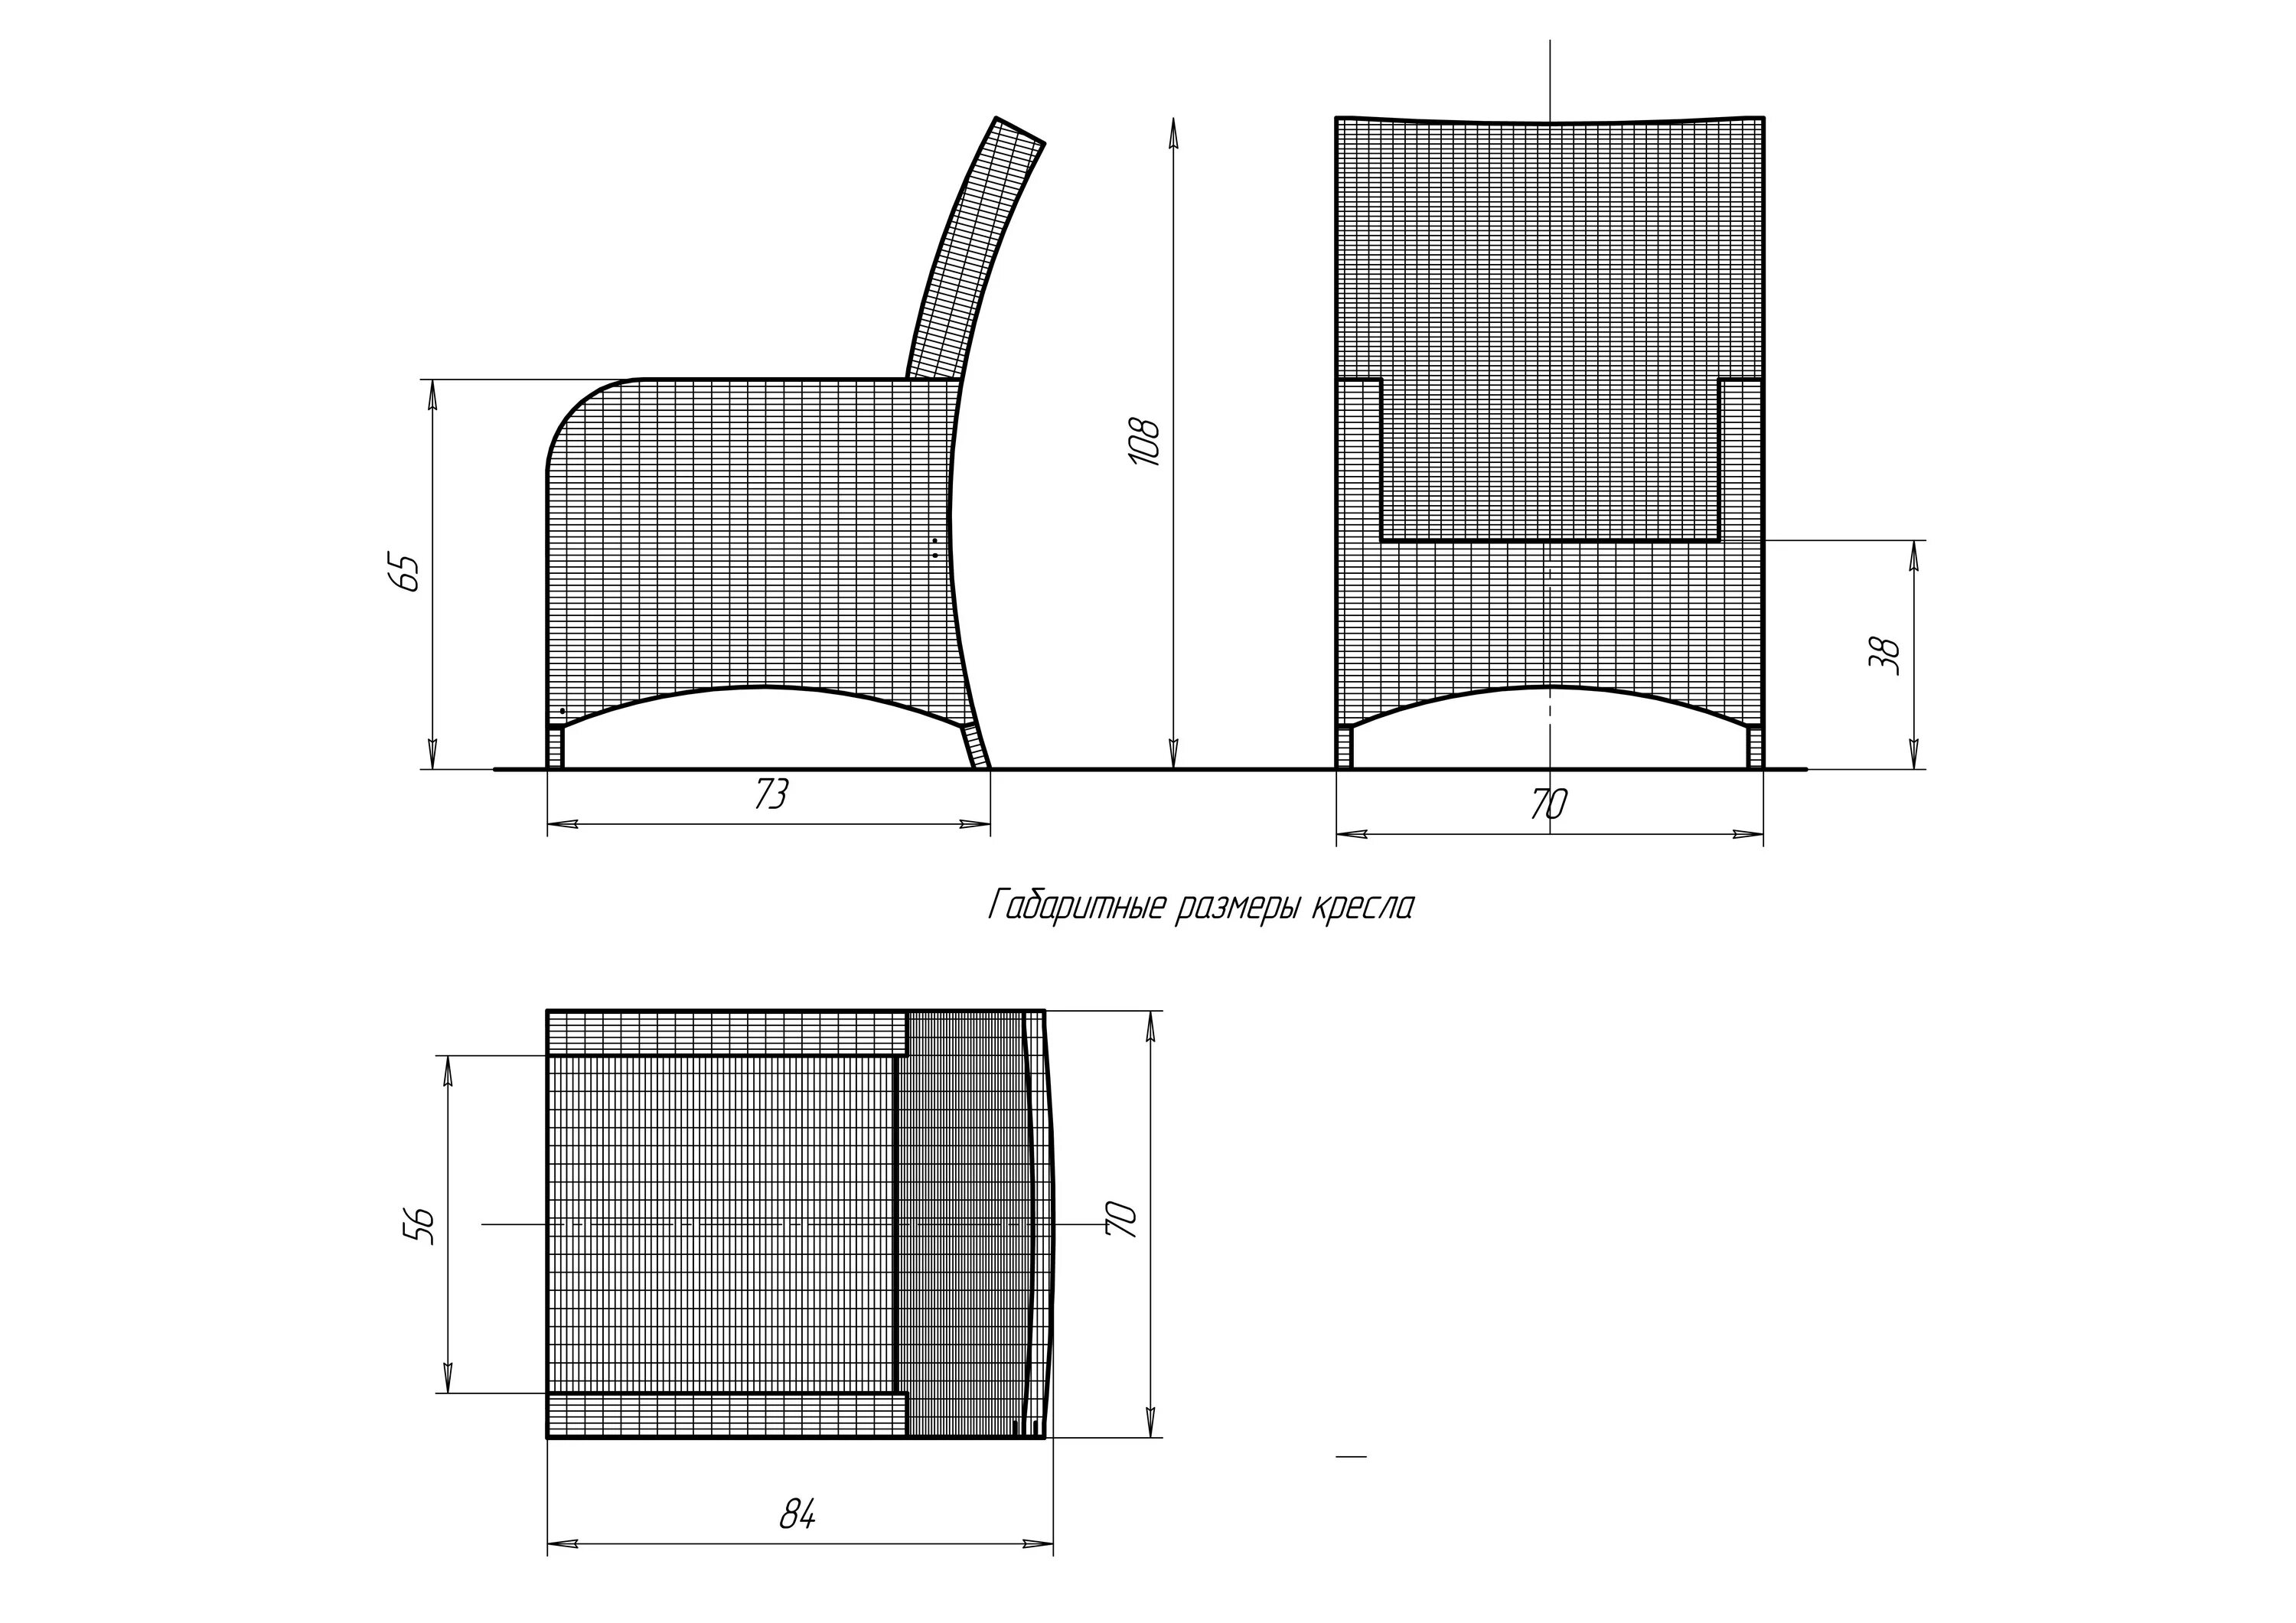 Размеры ротанга. Чертежи каркасов для ротанговой мебели. Кресло Kartell ротанг чертежи каркаса. Мебель из ротанга каркас чертеж алюминий. Каркас алюминиевый для мебели из ротанга чертеж.